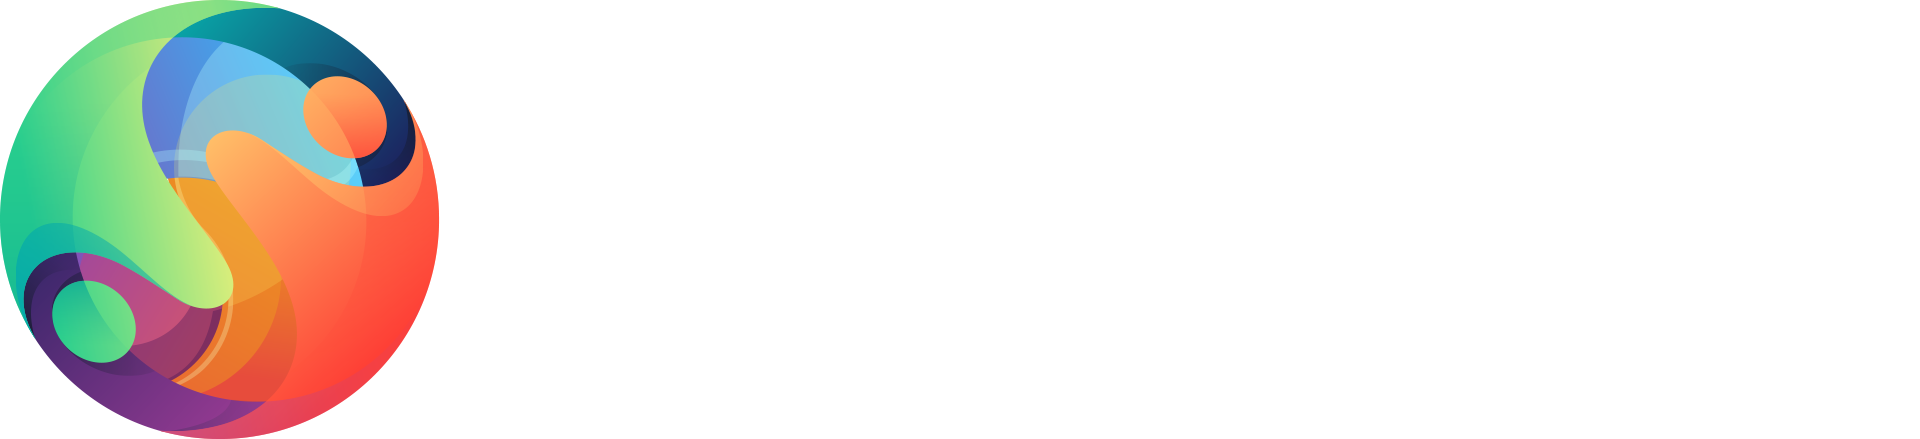 Coastal Health Institute